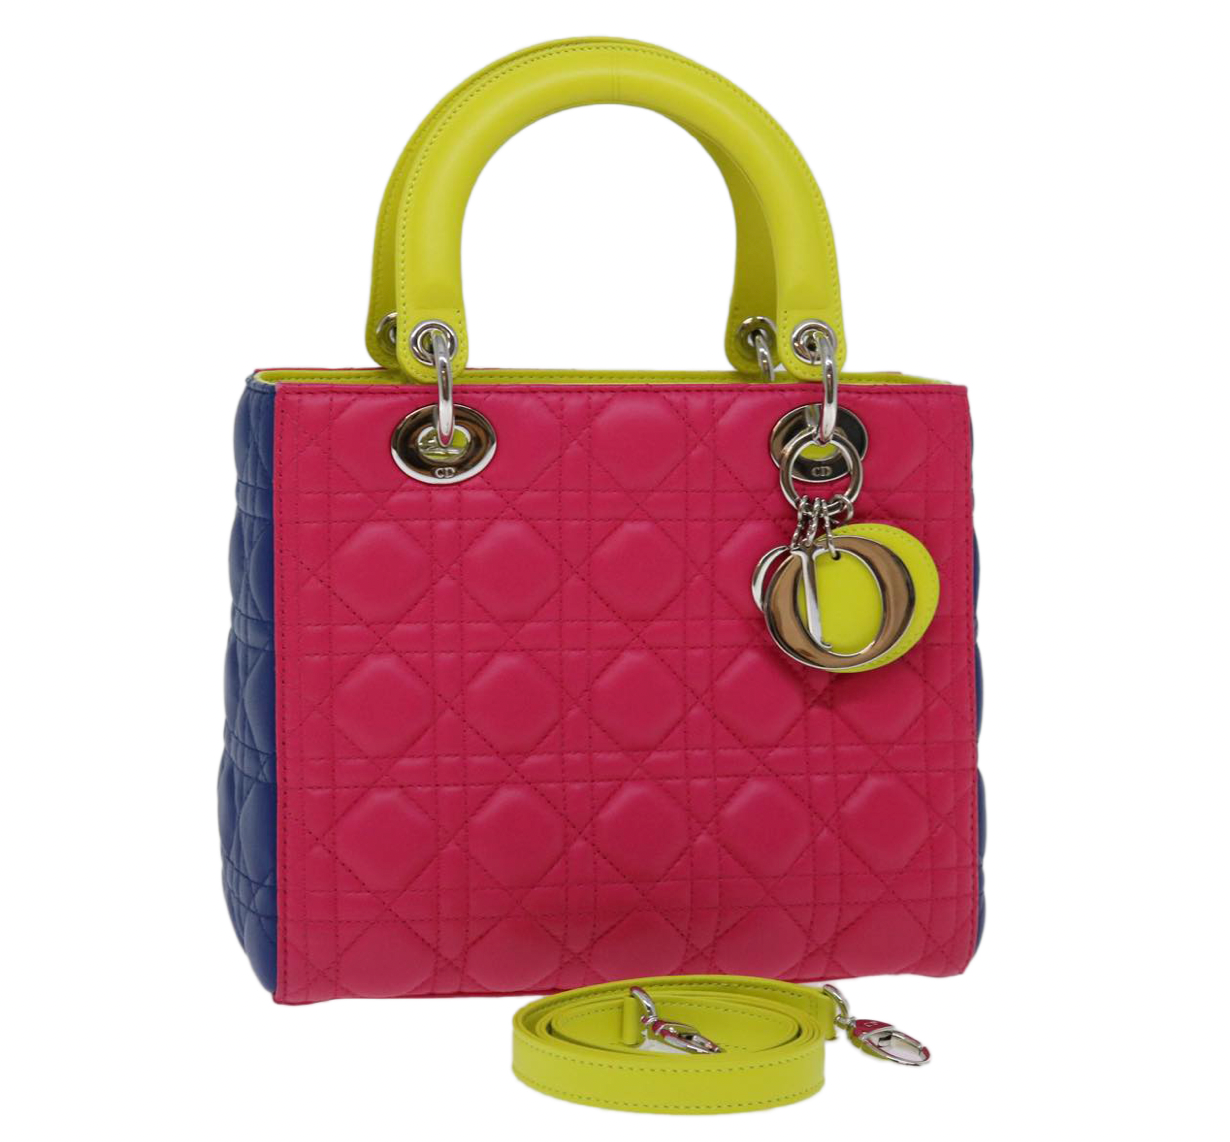 預先擁有的2013 Lady Dior手提包，由粉紅色，深紫色和霓虹綠色connage Design製作的彩色皮革製成